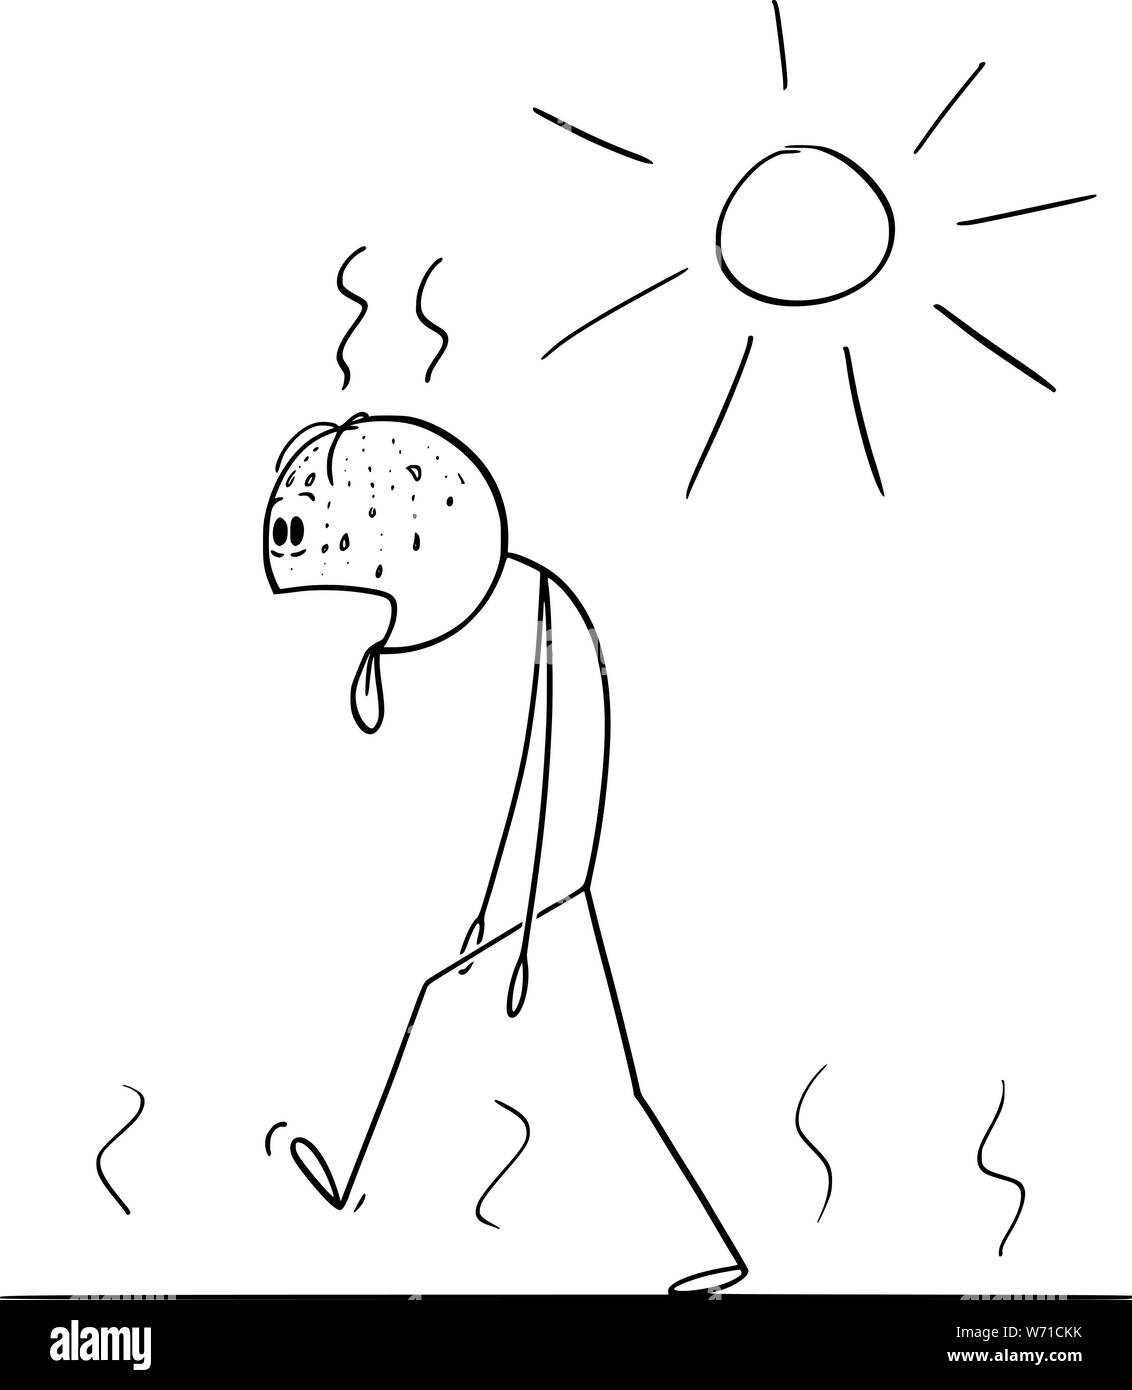 Vektor cartoon Strichmännchen Zeichnen konzeptionelle Darstellung der Durst und erschöpft Man Walking im sonnigen Tag im Sommer mit herausgestreckter Zunge räkelt. Stock Vektor